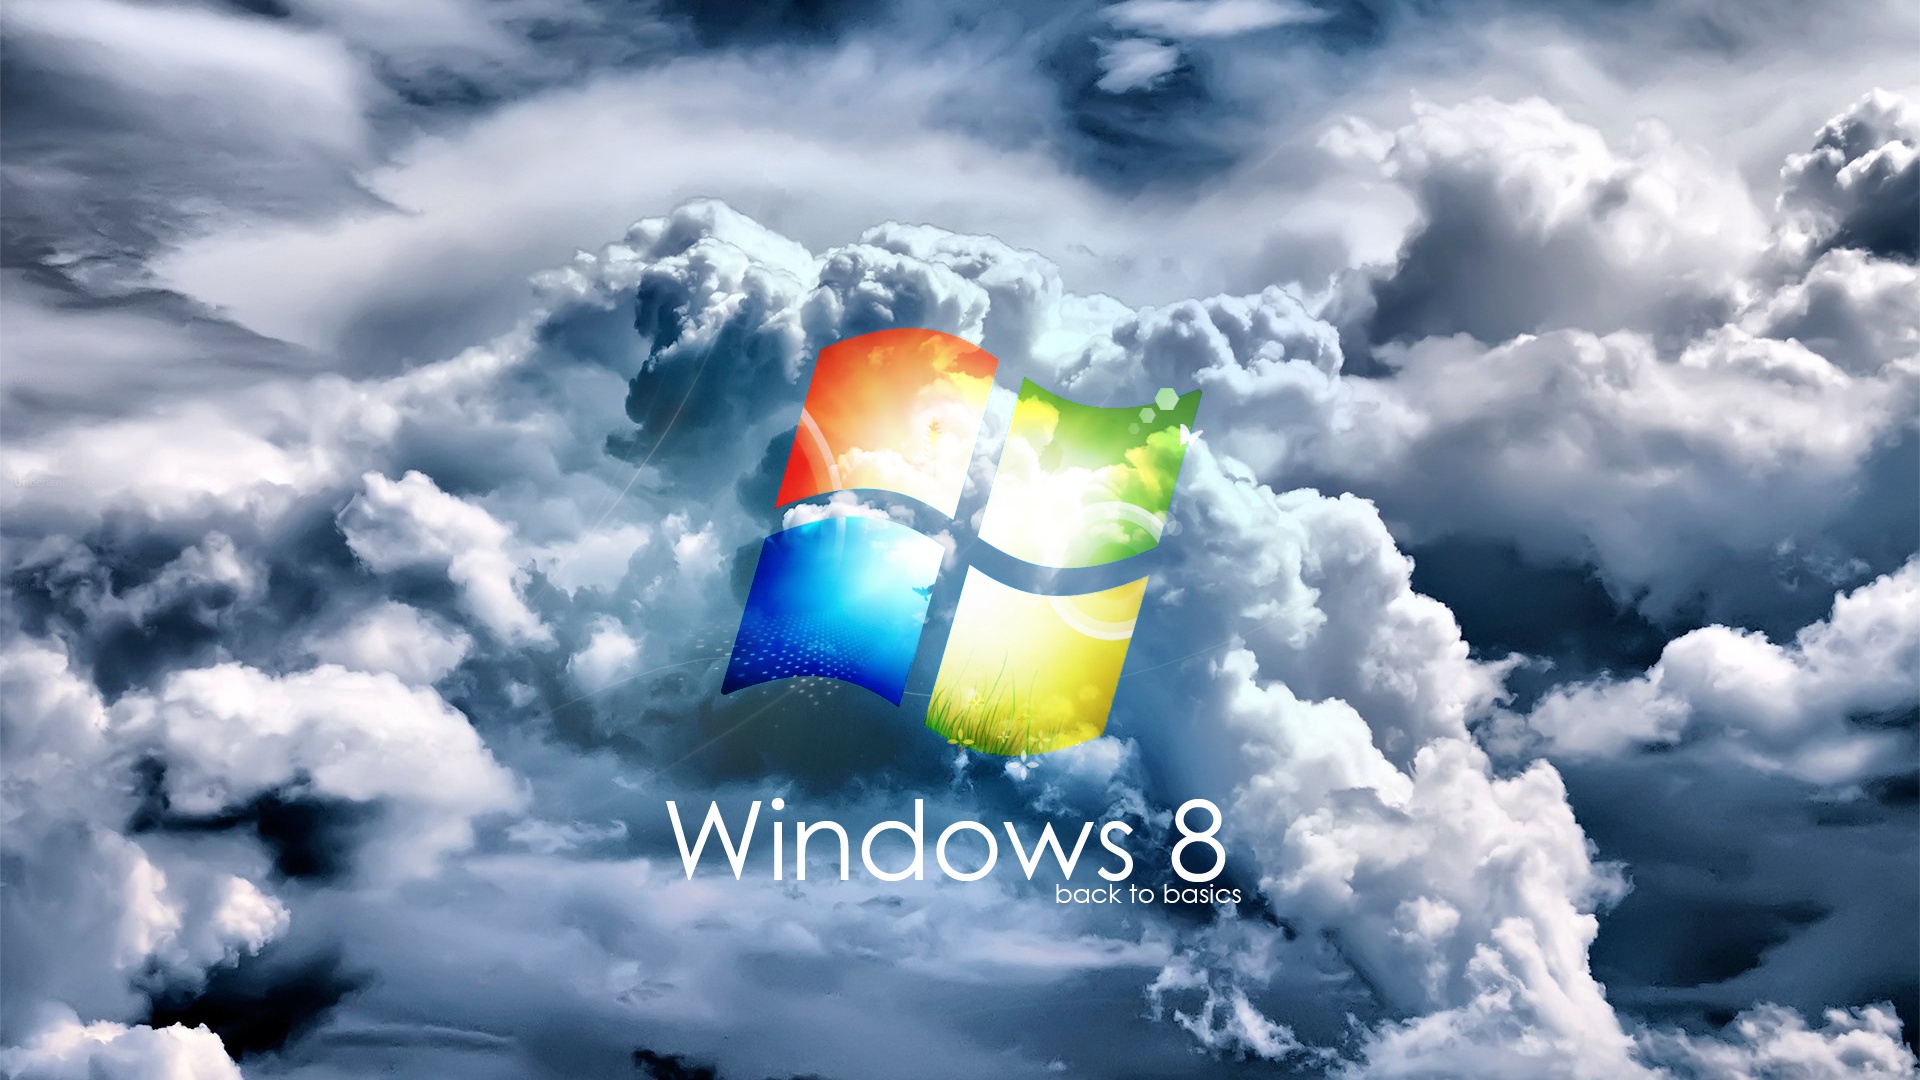 Windows 8 Clouds Wallpaper 17435 Wallpaper High Resolution